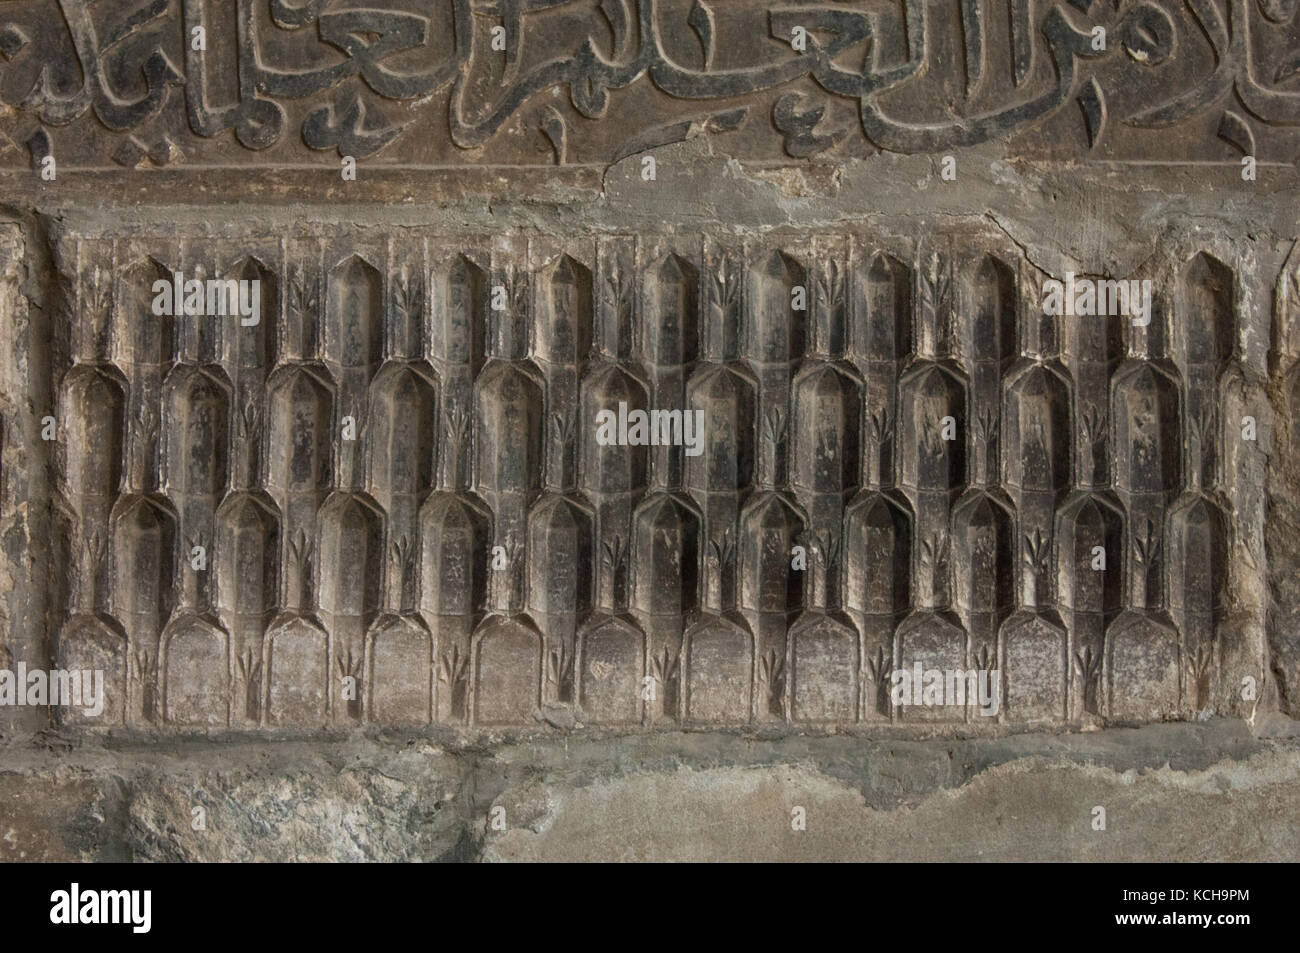 Antica scrittura araba sulla parete Foto Stock